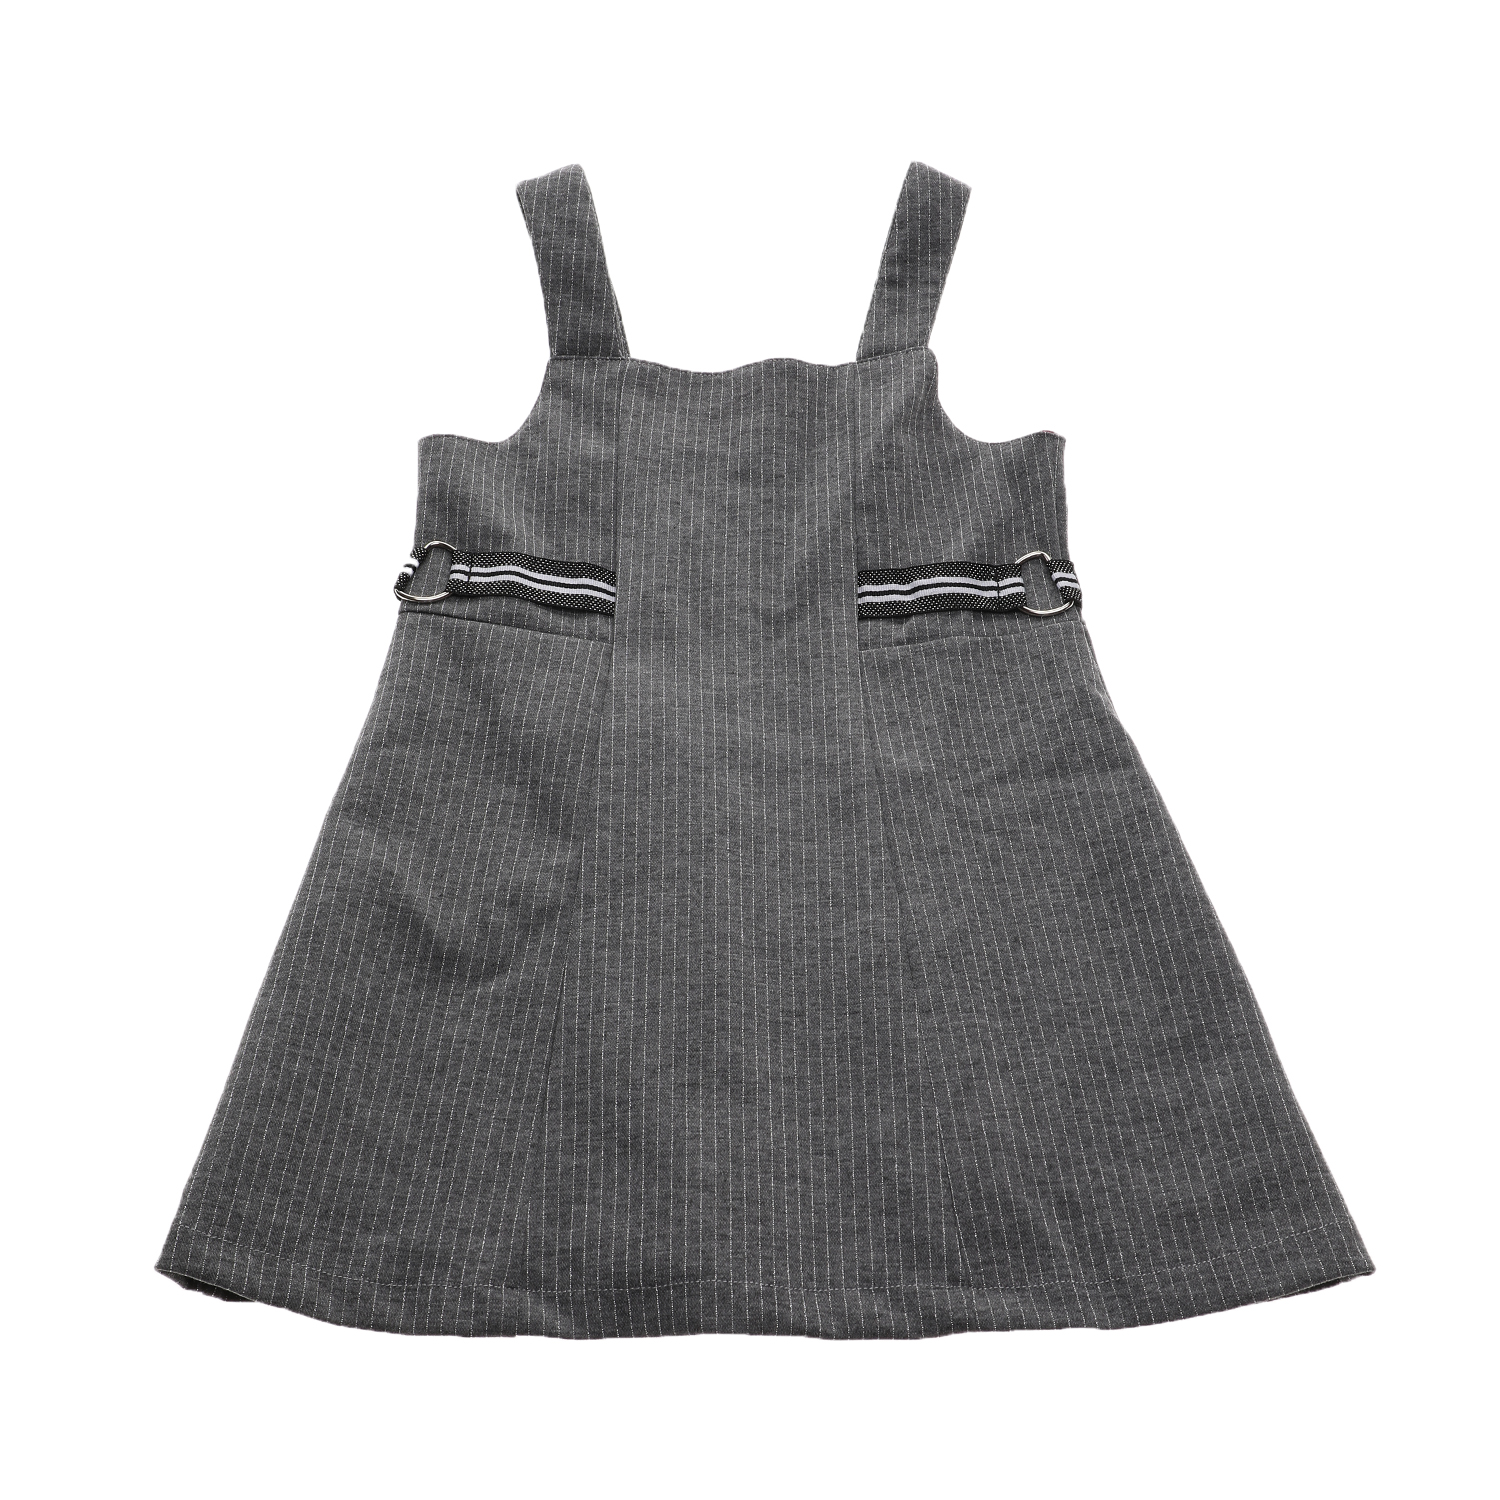 Παιδικά/Girls/Ρούχα/Φορέματα Κοντομάνικα-Αμάνικα SAM 0-13 - Παιδικό φόρεμα SAM 0-13 γκρι ασημί